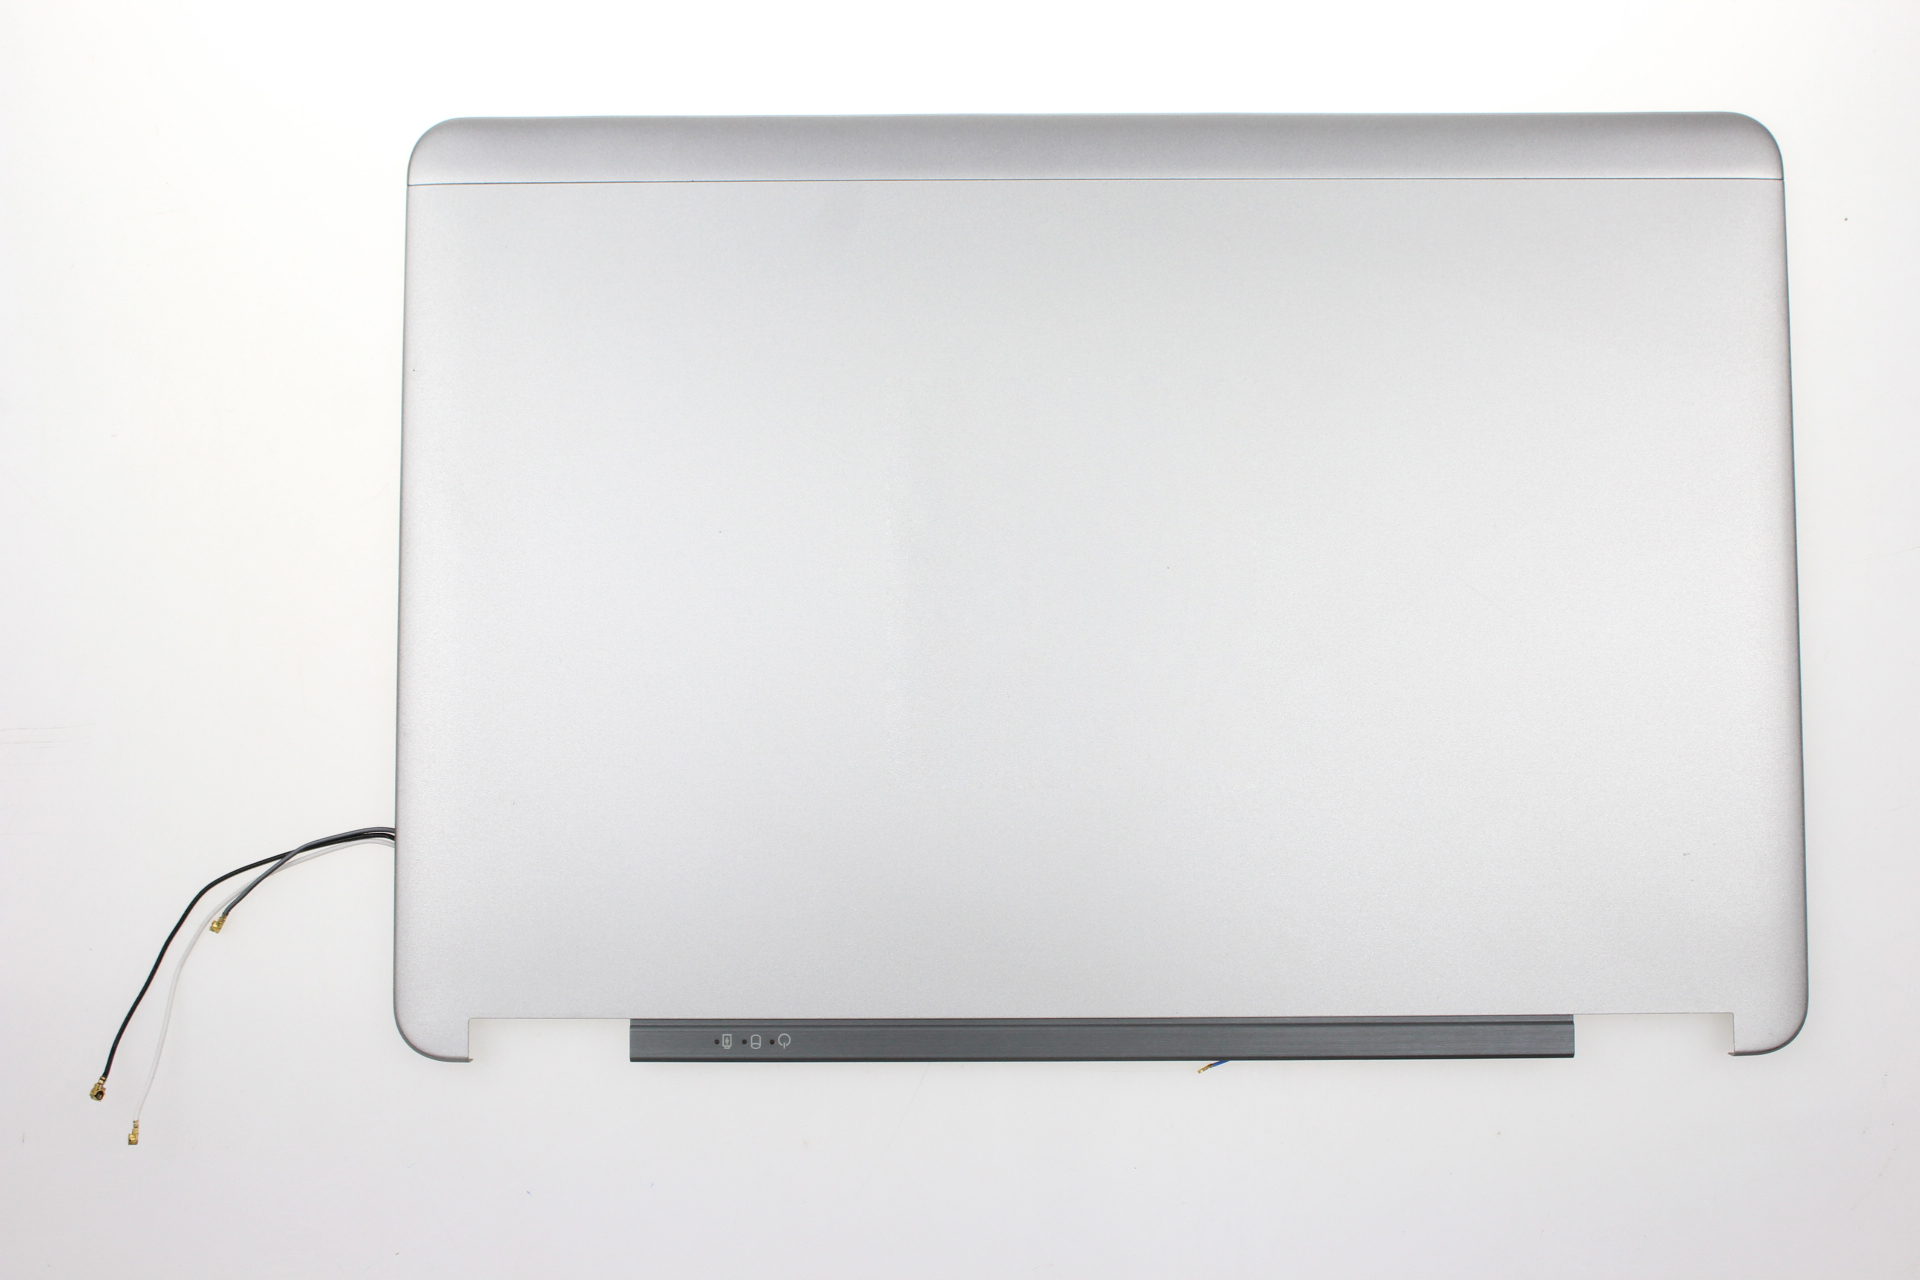 Nuova copertina posteriore LCD per laptop per Dell E7240 una copertura